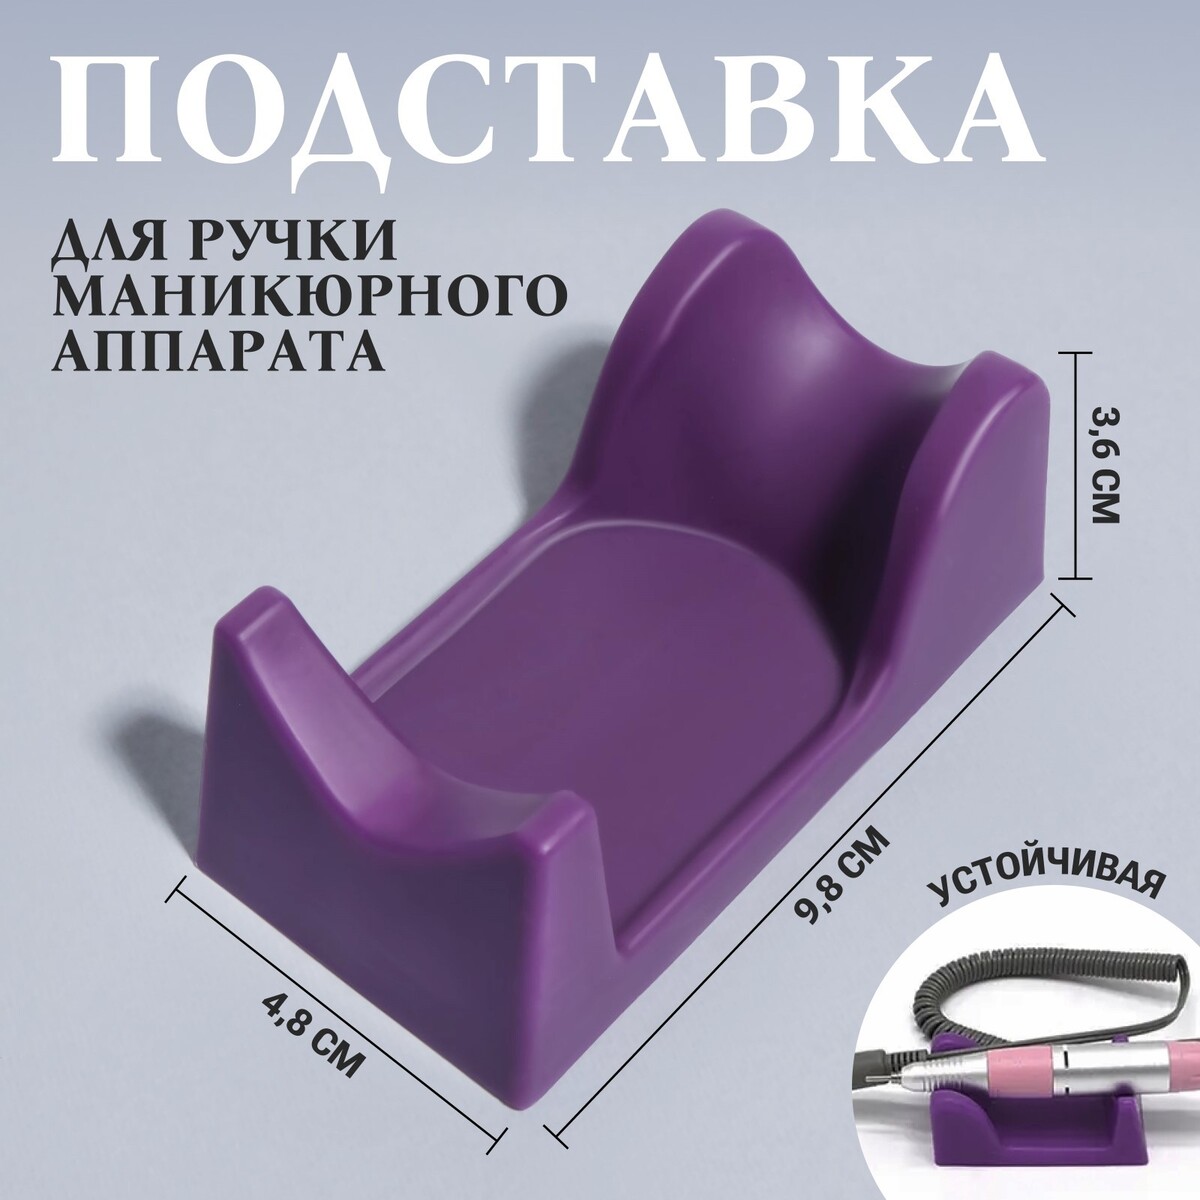 Подставка для ручки маникюрного аппарата, 9,8 × 4,8 × 3,6 см, цвет фиолетовый подставка под ручки зайчик албезия 10х9х18 см